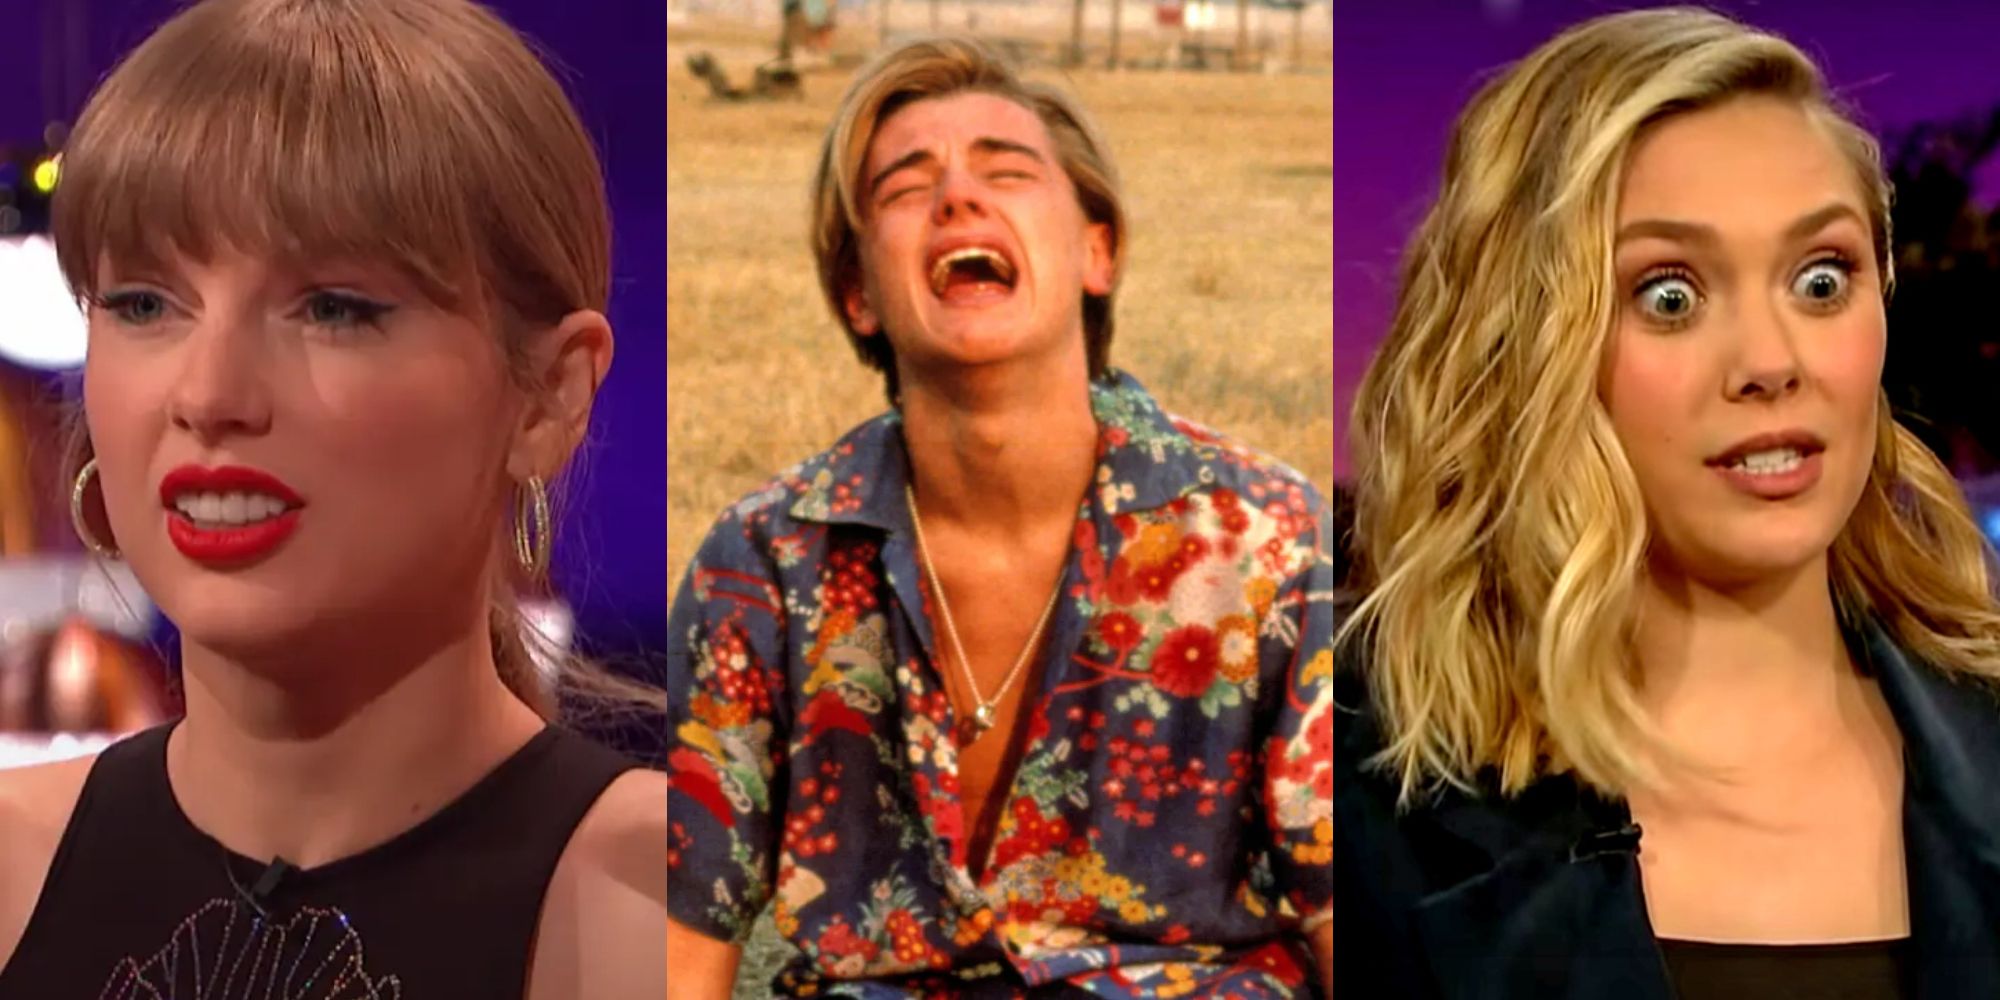 Reaction images of Taylor Swift, Leonardo DiCaprio, and Elizabeth Olsem